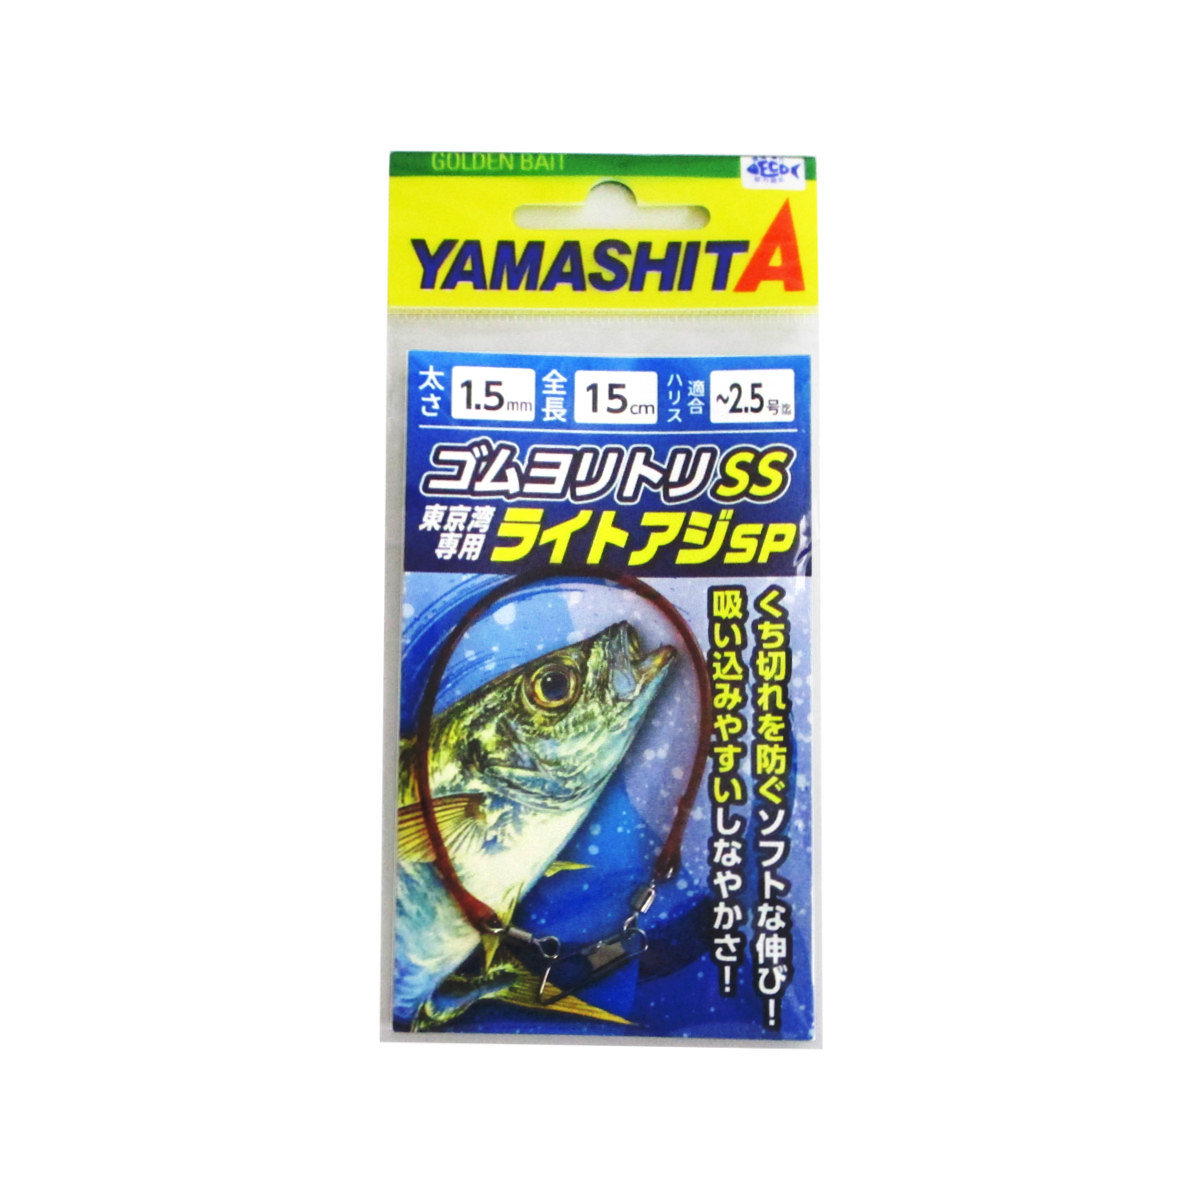 ヤマリア ヤマシタ ゴムヨリトリSS 超可爱 1.5mm ライトアジSP 15cm 日本人気超絶の